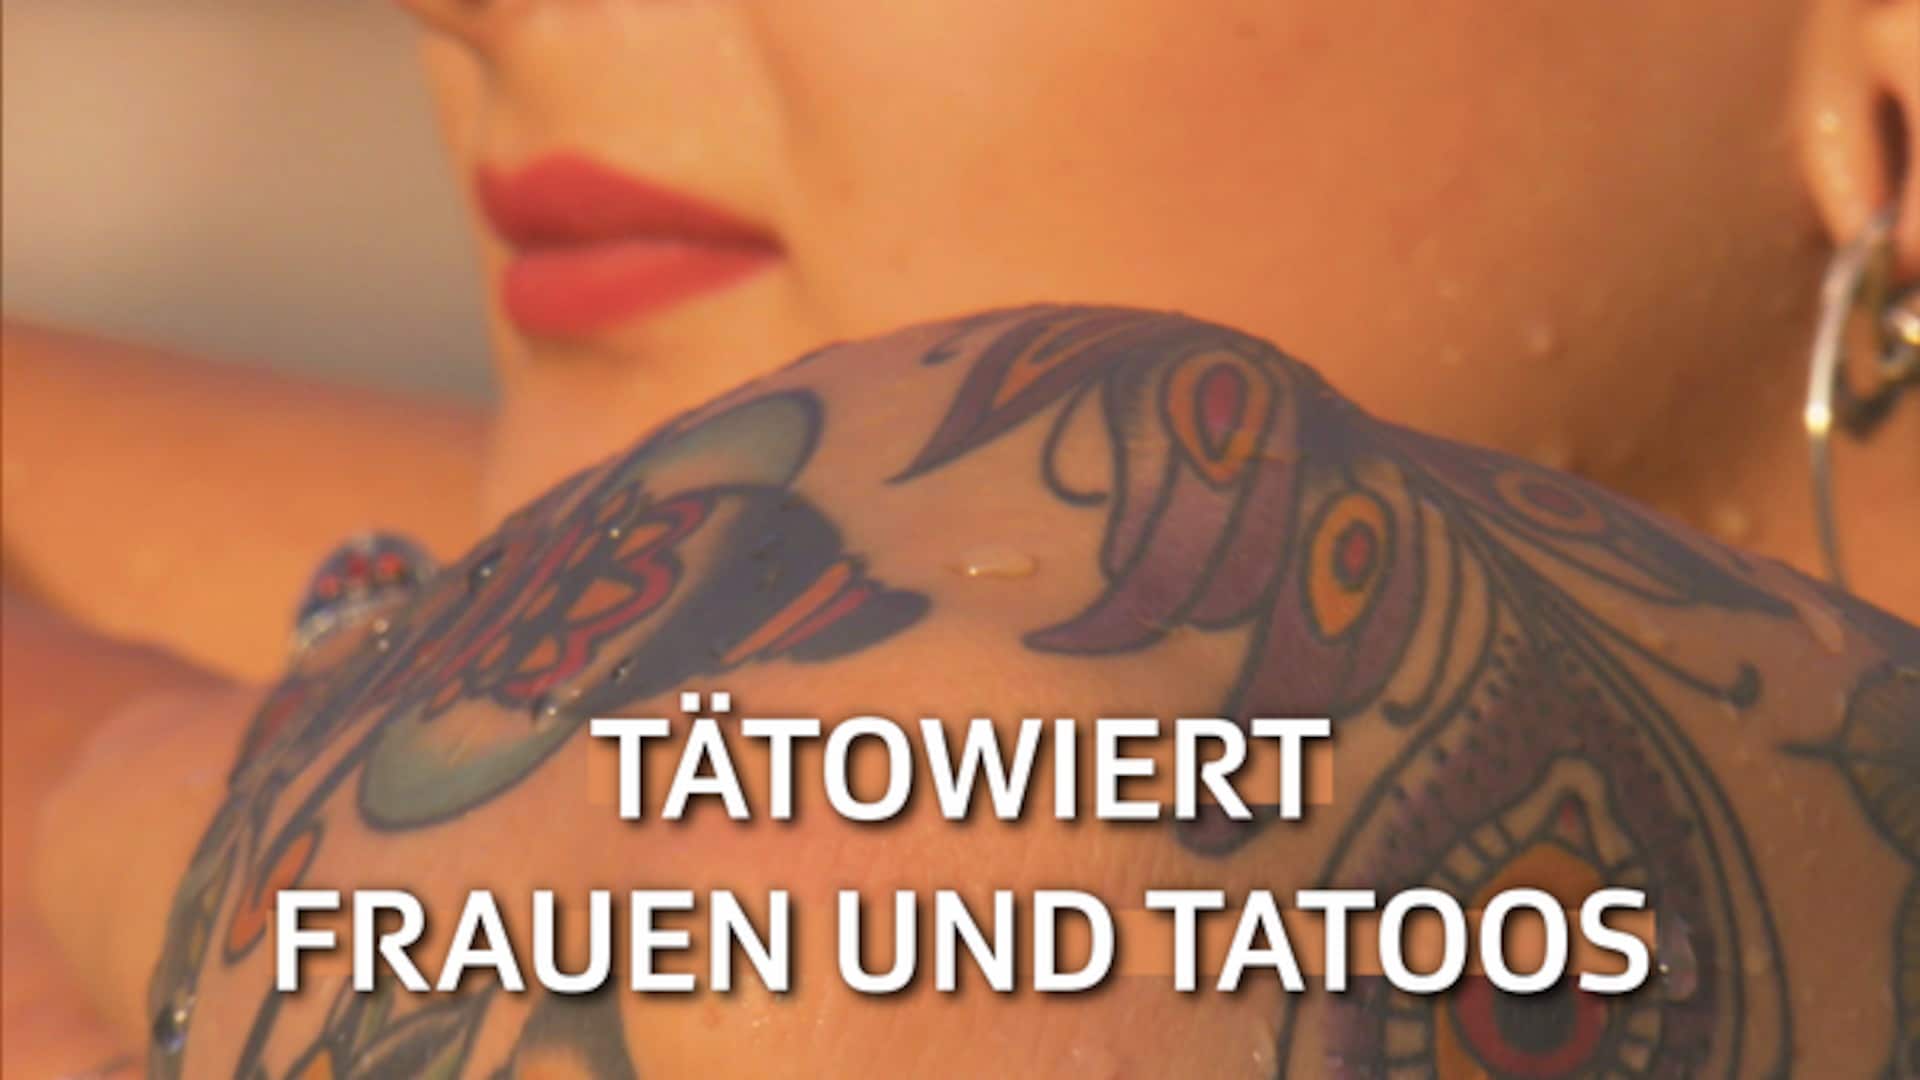 Tatuadas - dunnas e tatoos